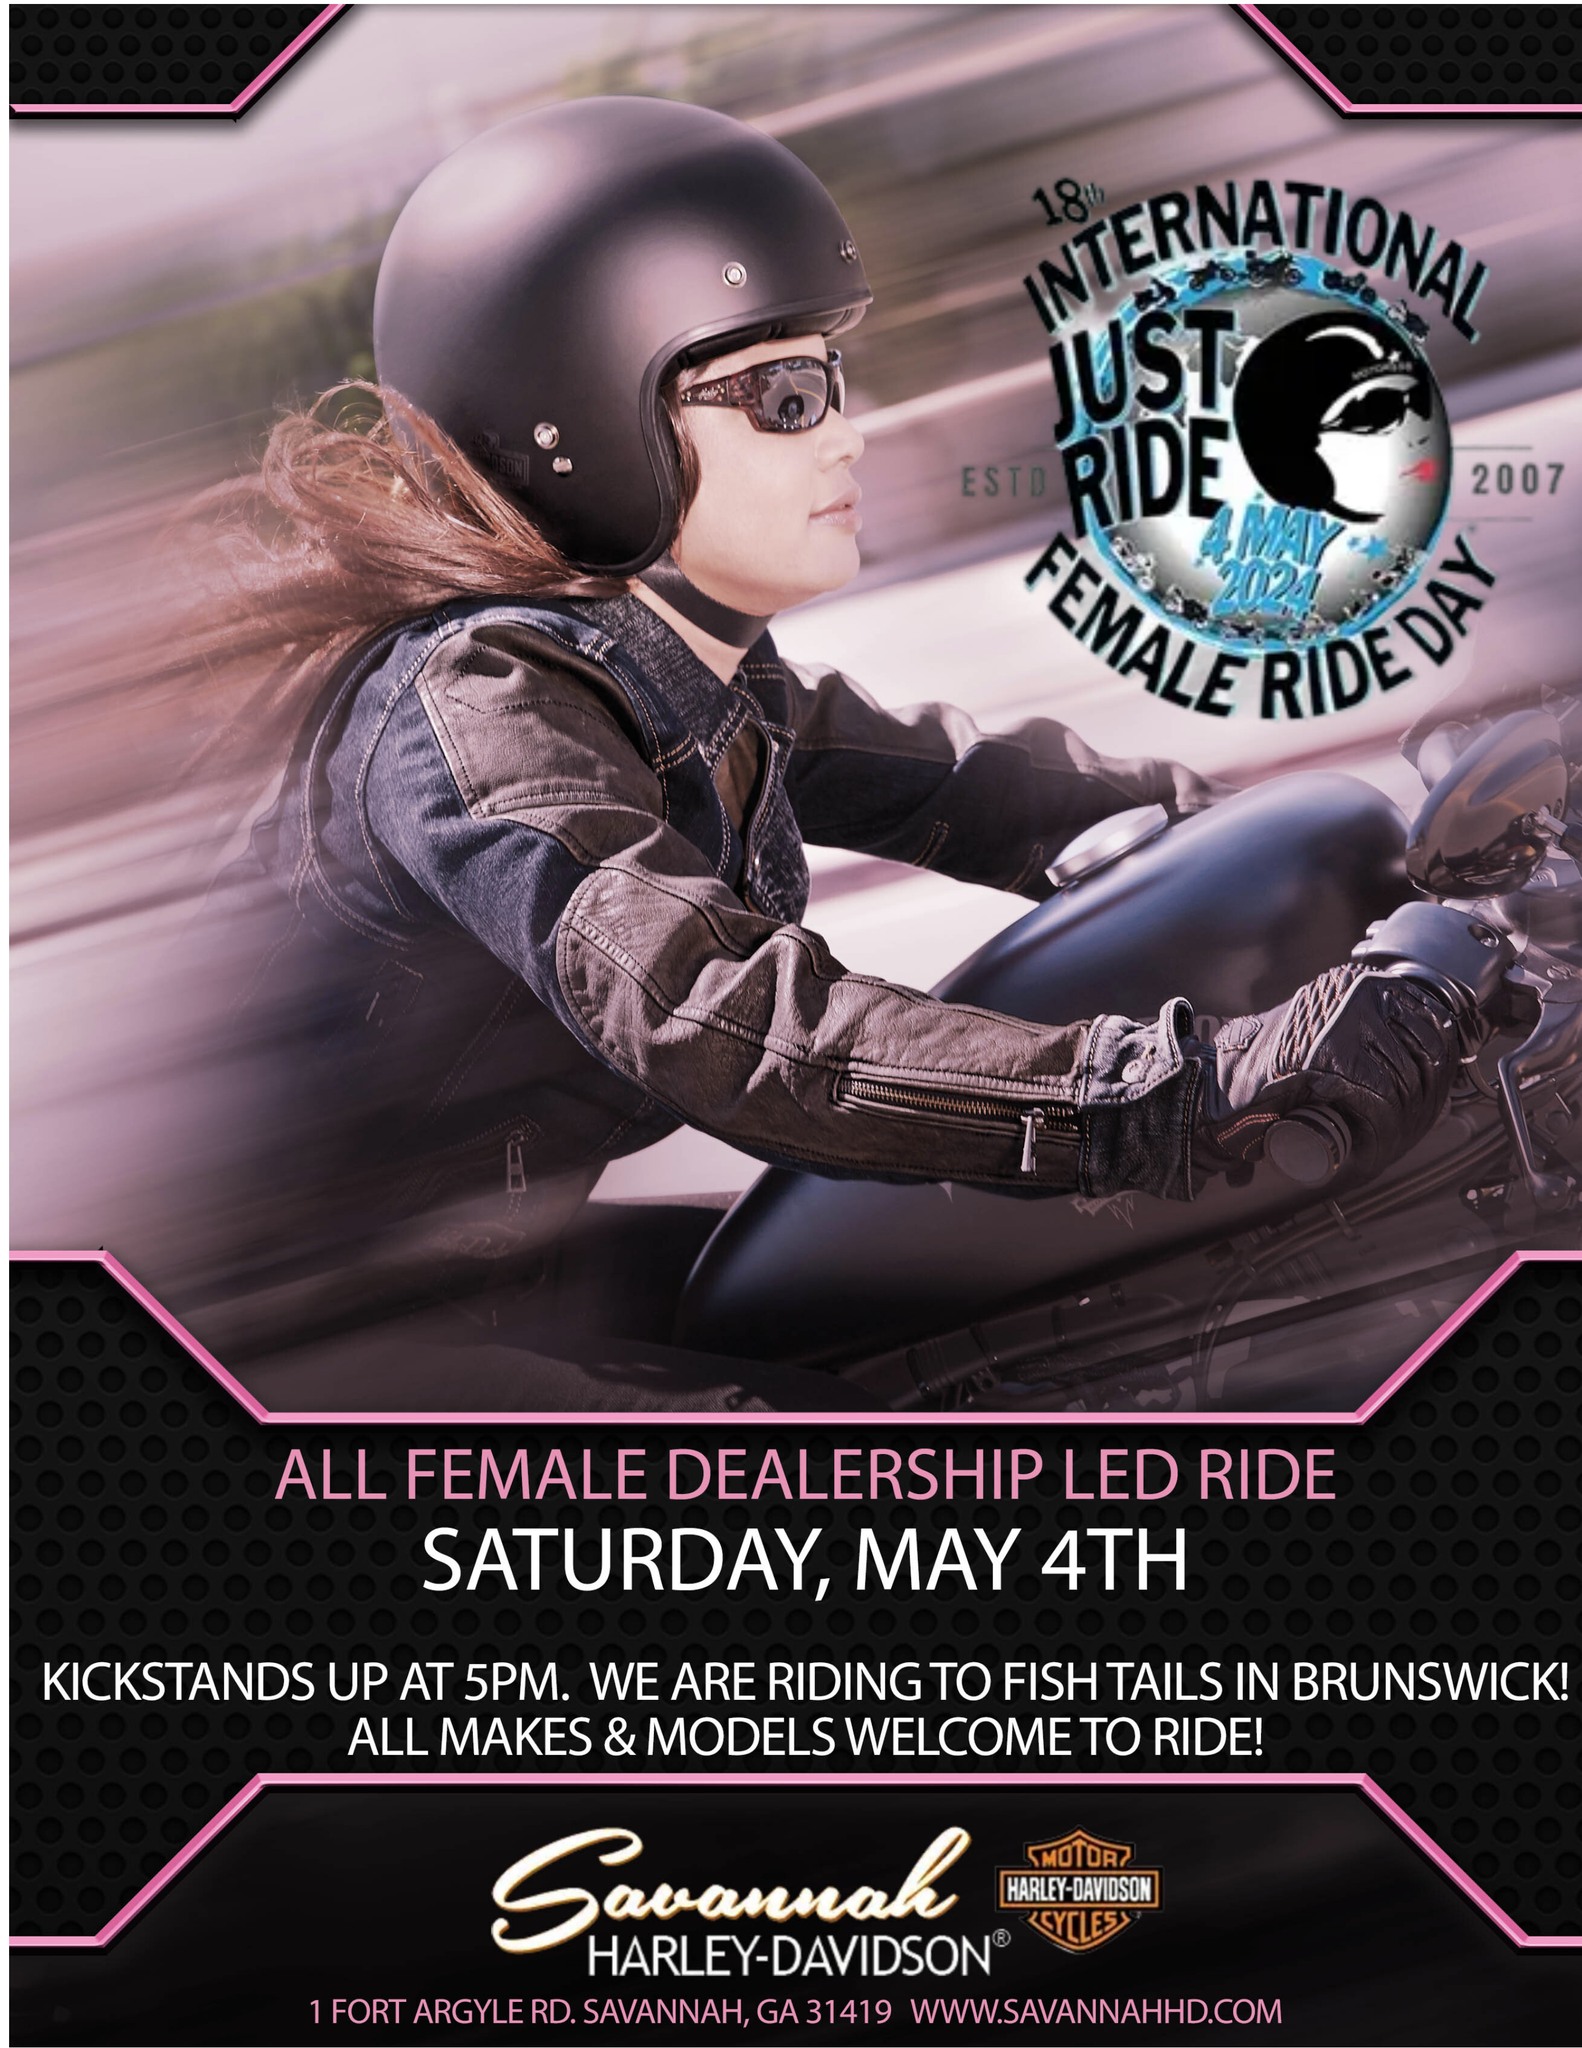 18th International All Femail Dealership Led Ride @ Savannah Harley-Davidson | Savannah | Georgia | United States